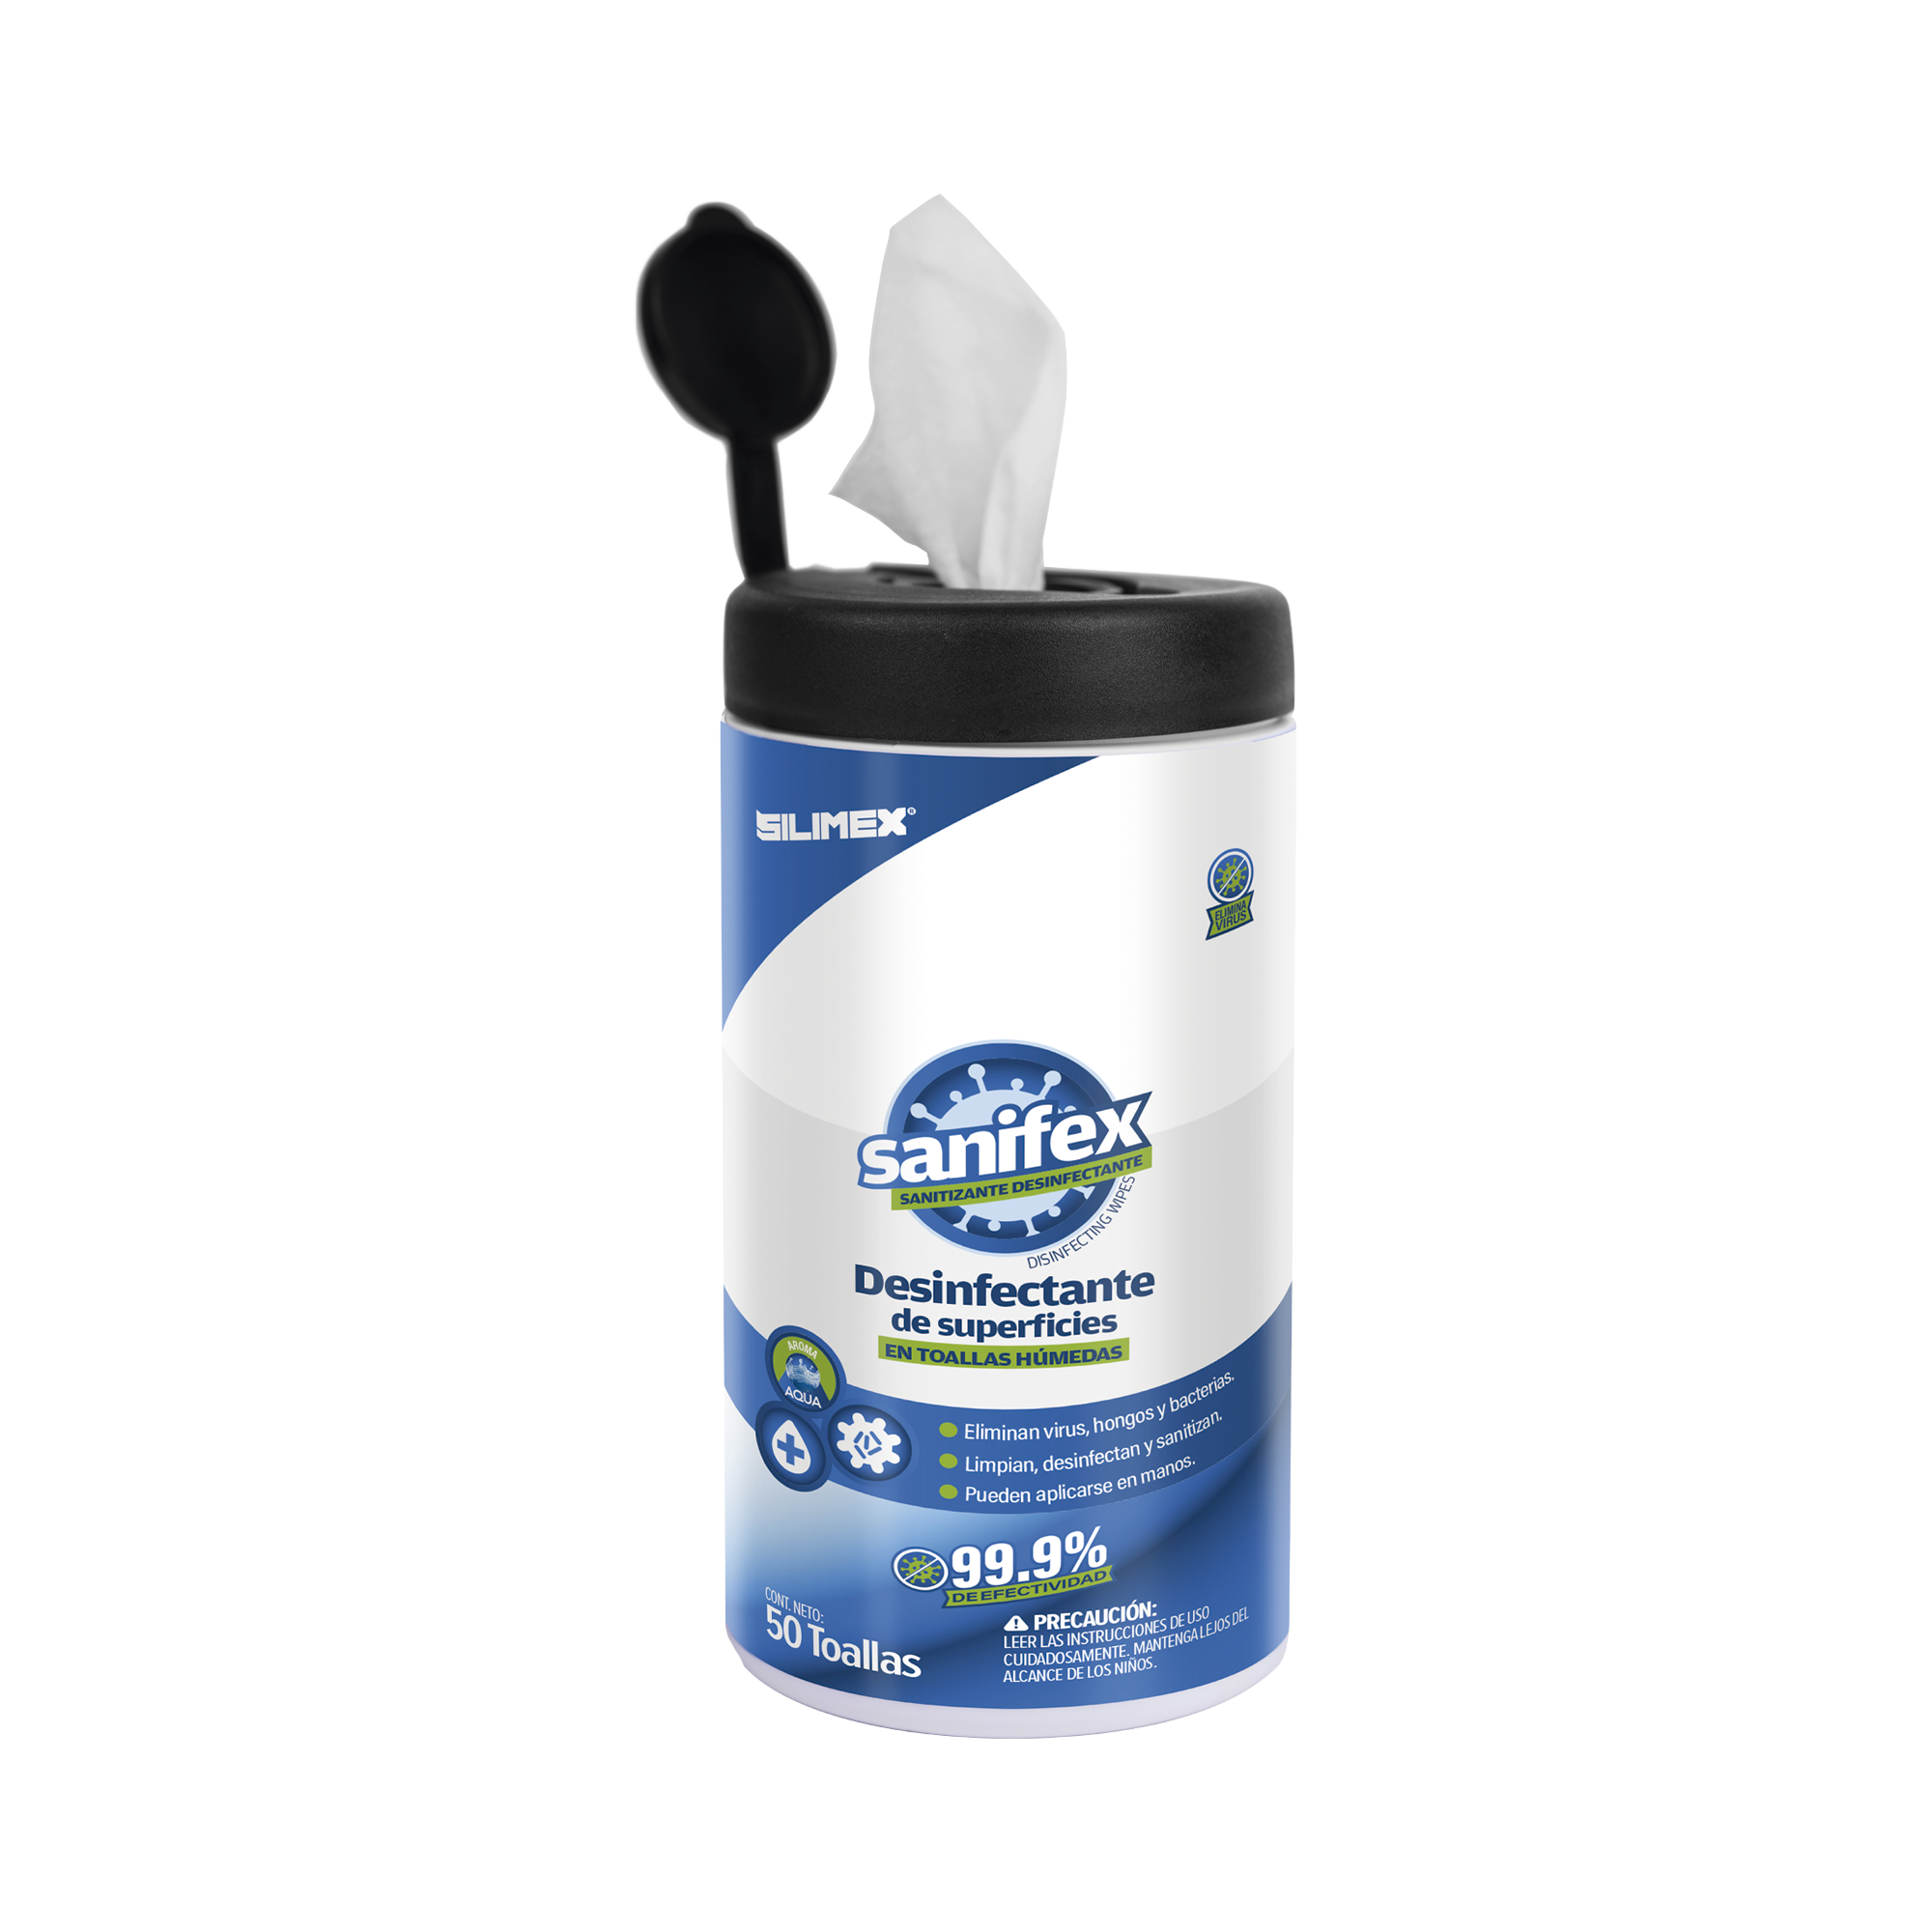 Toallitas desinfectantes formuladas para desinfectar las superficies, ayudando a eliminar virus, bacterias y hongos que pueden ser perjudiciales para la salud, presentación 50 toallas